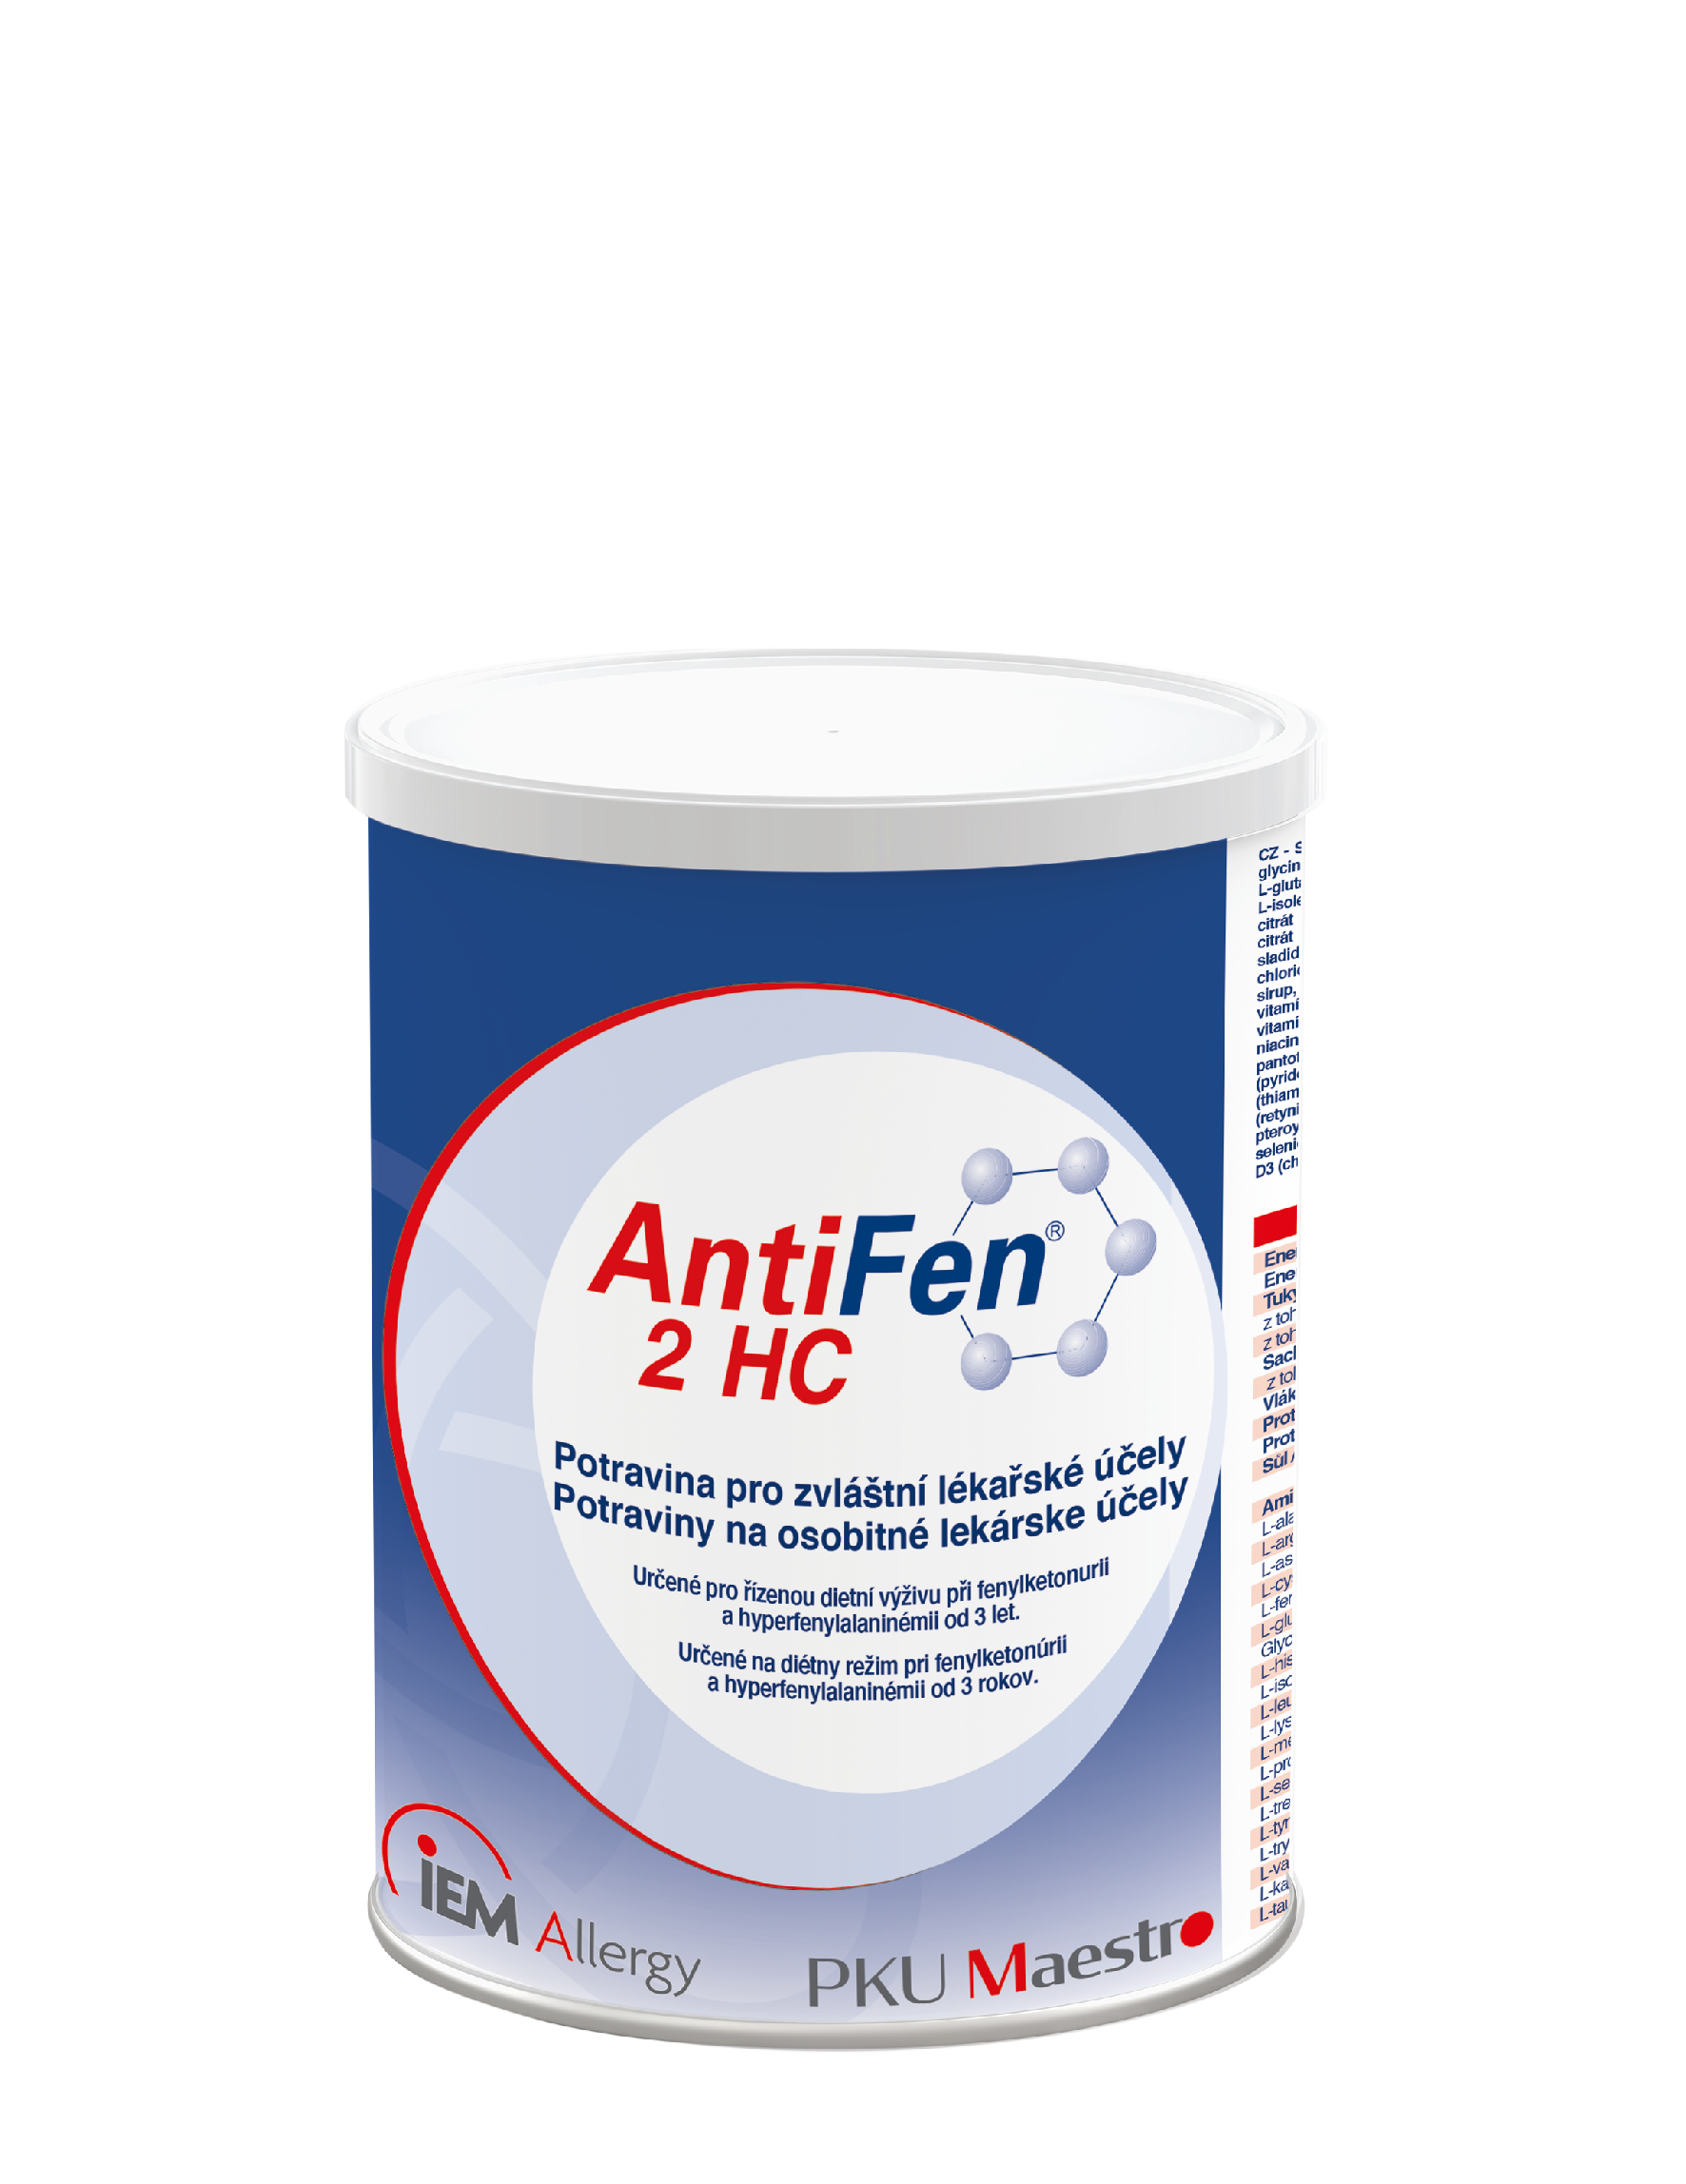 AntiFen 2 HC